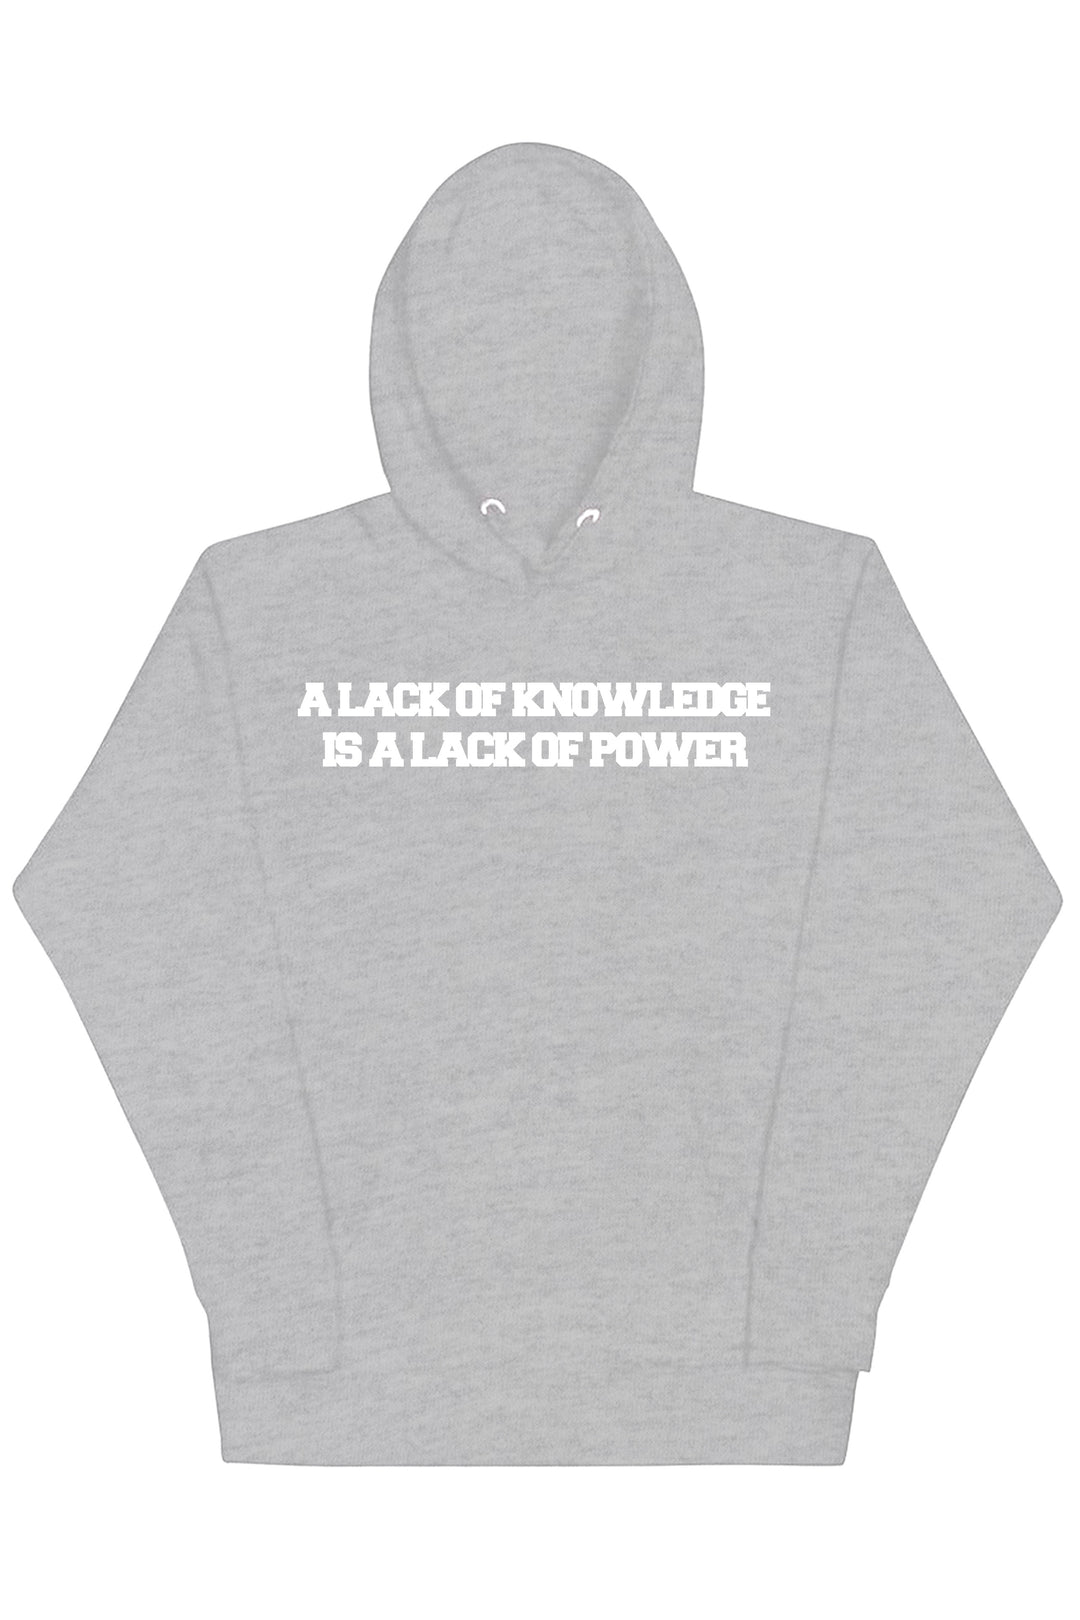 Knowledge & Power Hoodie (White Logo) - Zamage